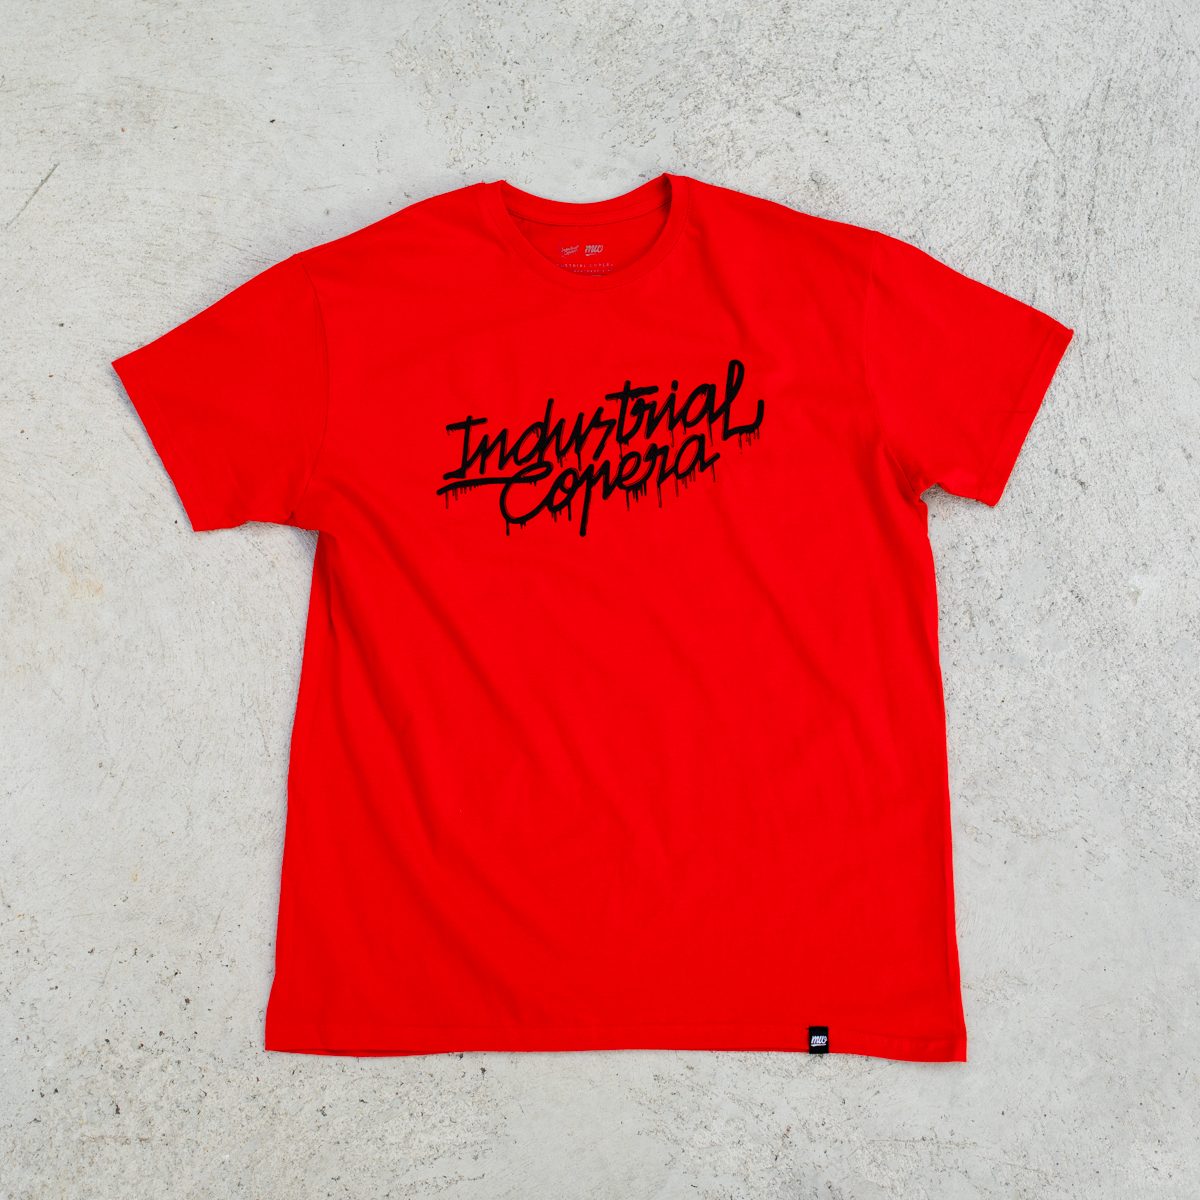 Camiseta roja Industrial Copera logo derretido